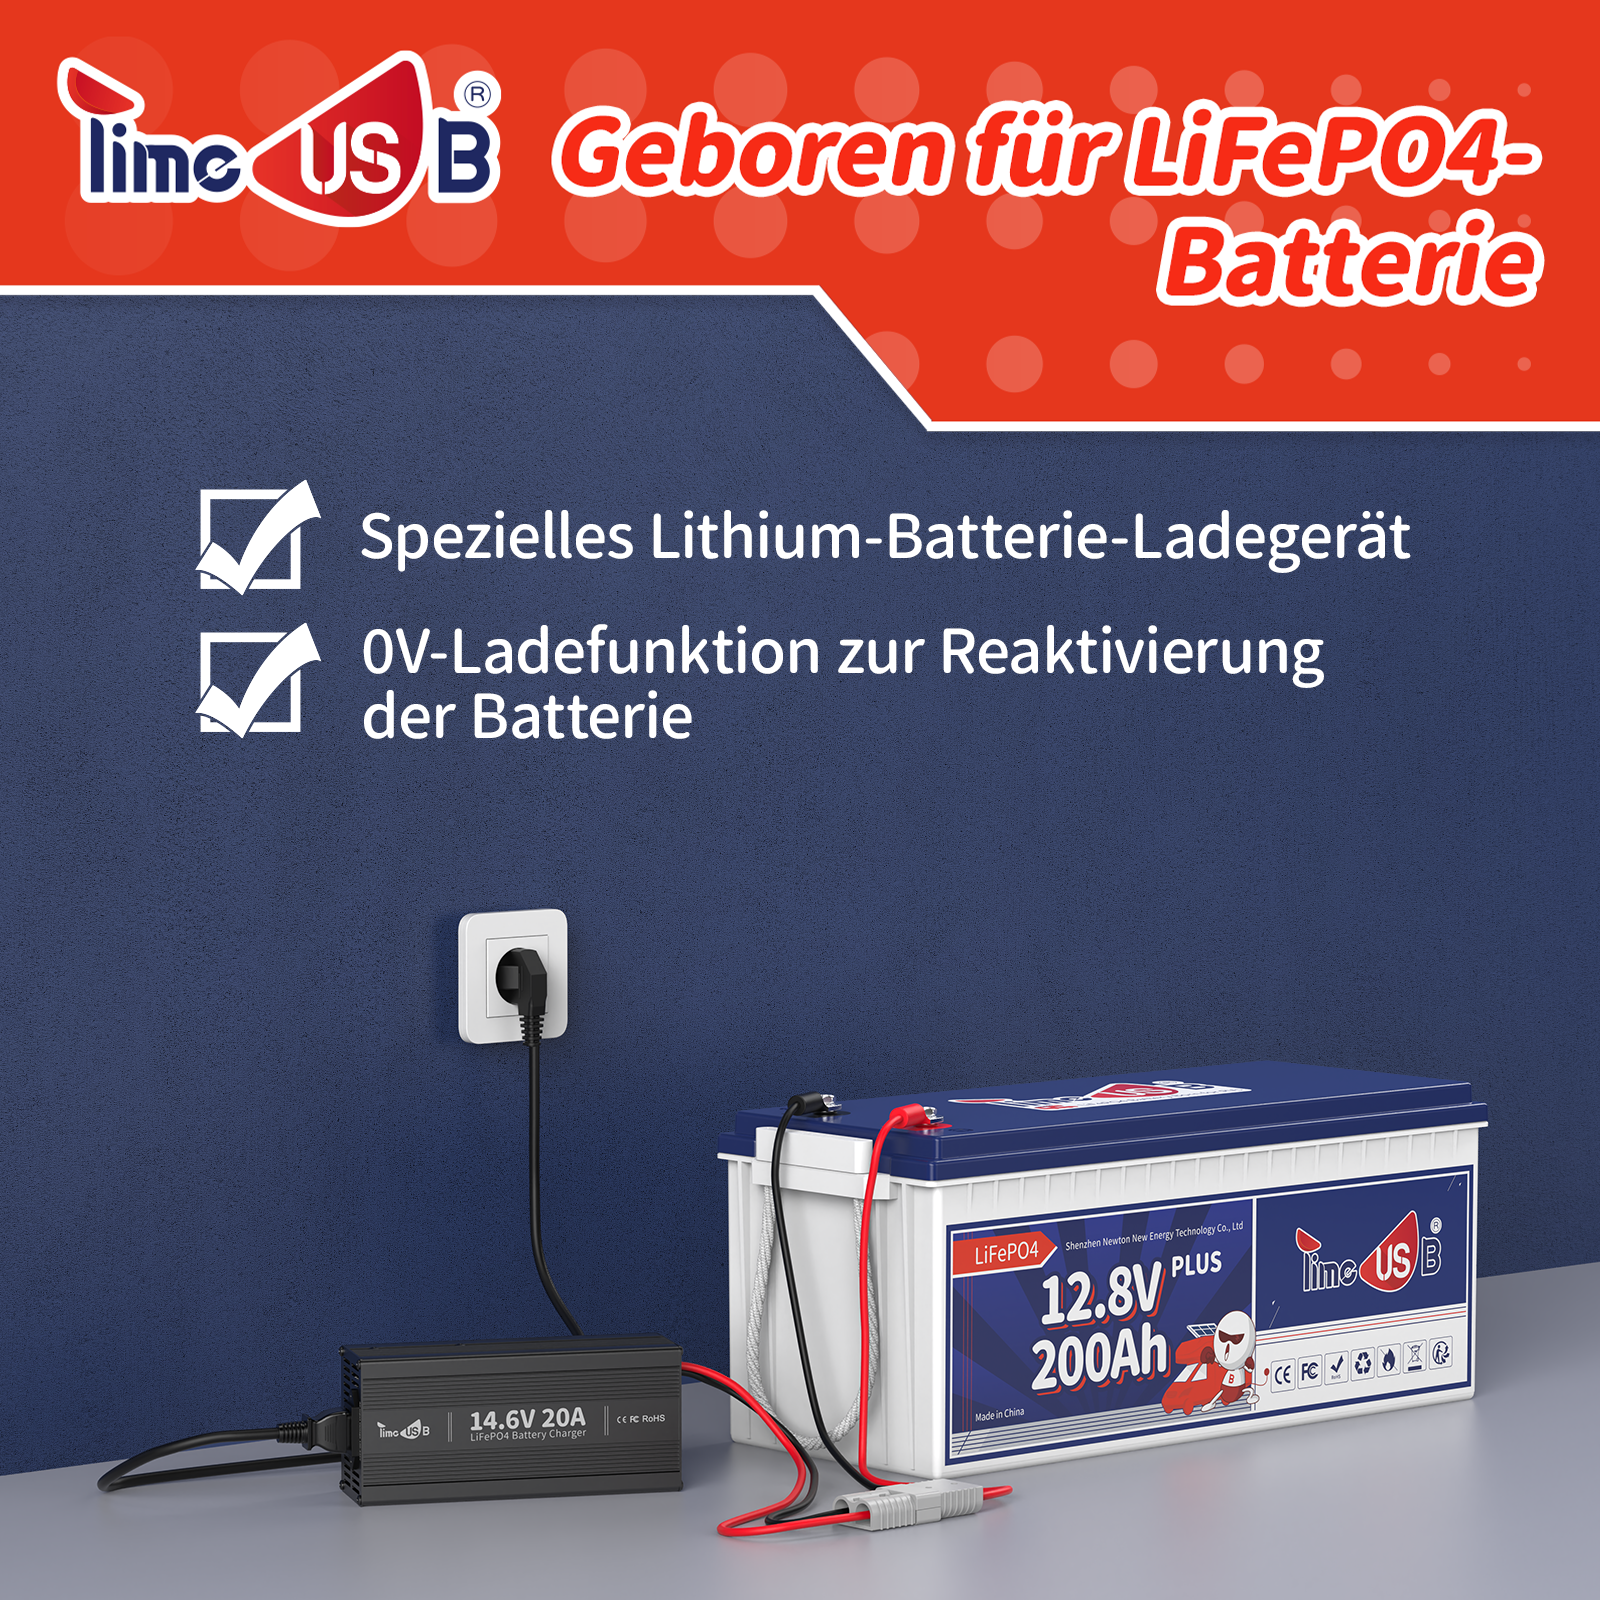 Chargeur Timeusb LiFePO4 chargeur de batterie 14.6V 20A 12V pour batterie LiFePO4